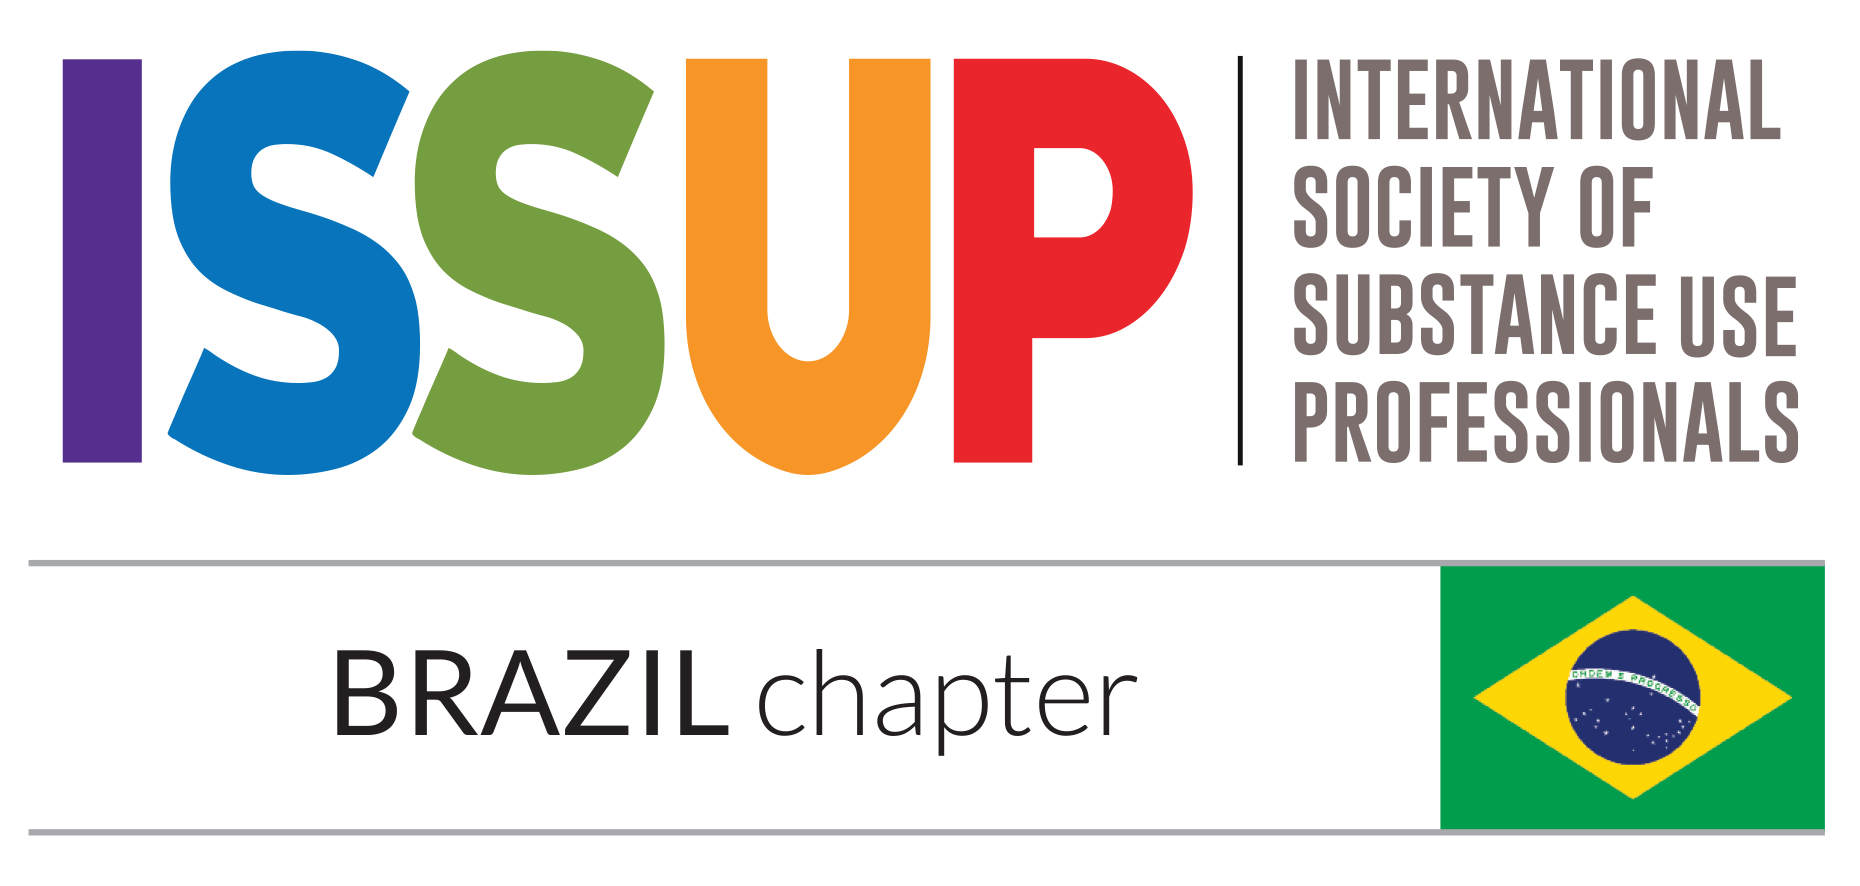 O Brasil é um dos Capítulos Nacionais da ISSUP na América Latina